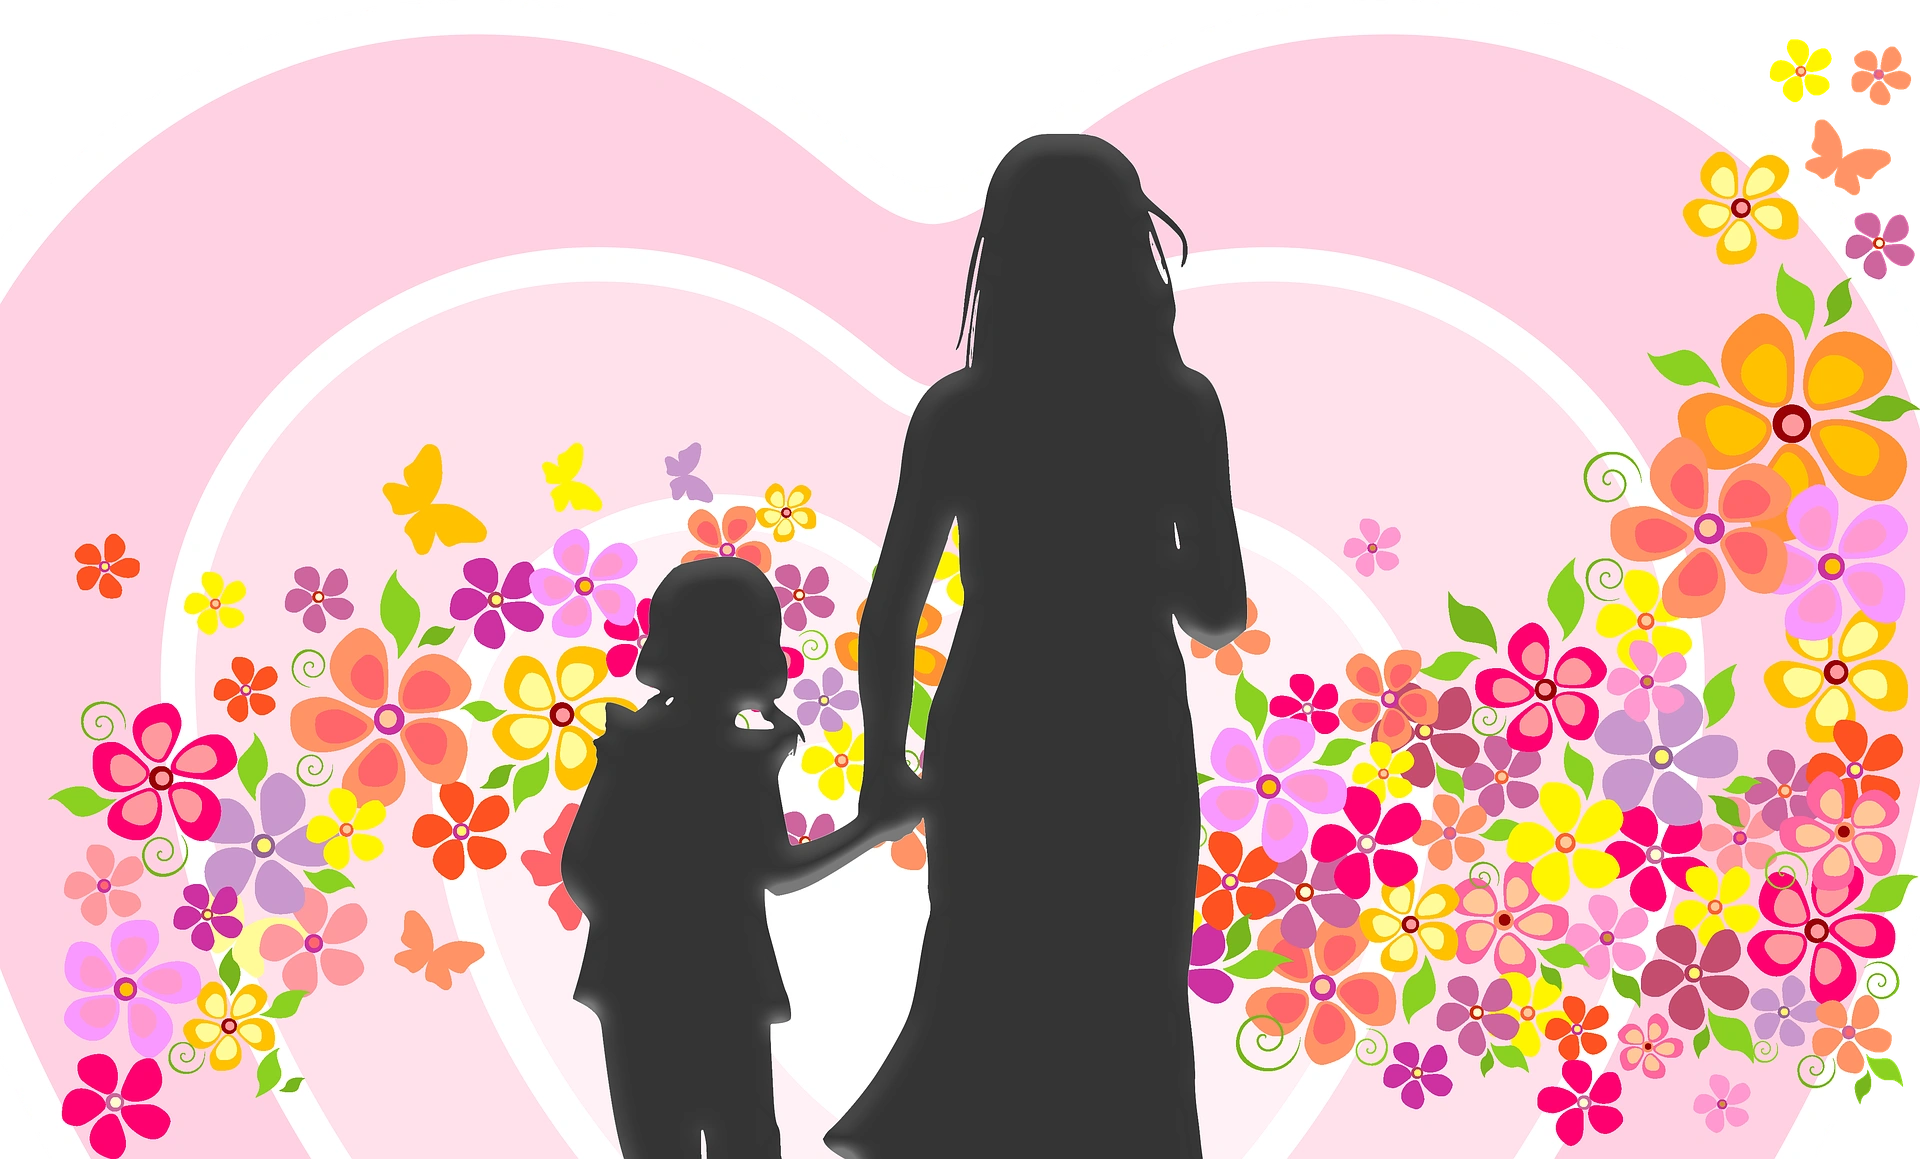 Мамины цветочки слова. Силуэт женщины с ребенком на руках. Рисунок ко Дню матери. Картина ко Дню матери. День матери картинки для детей.